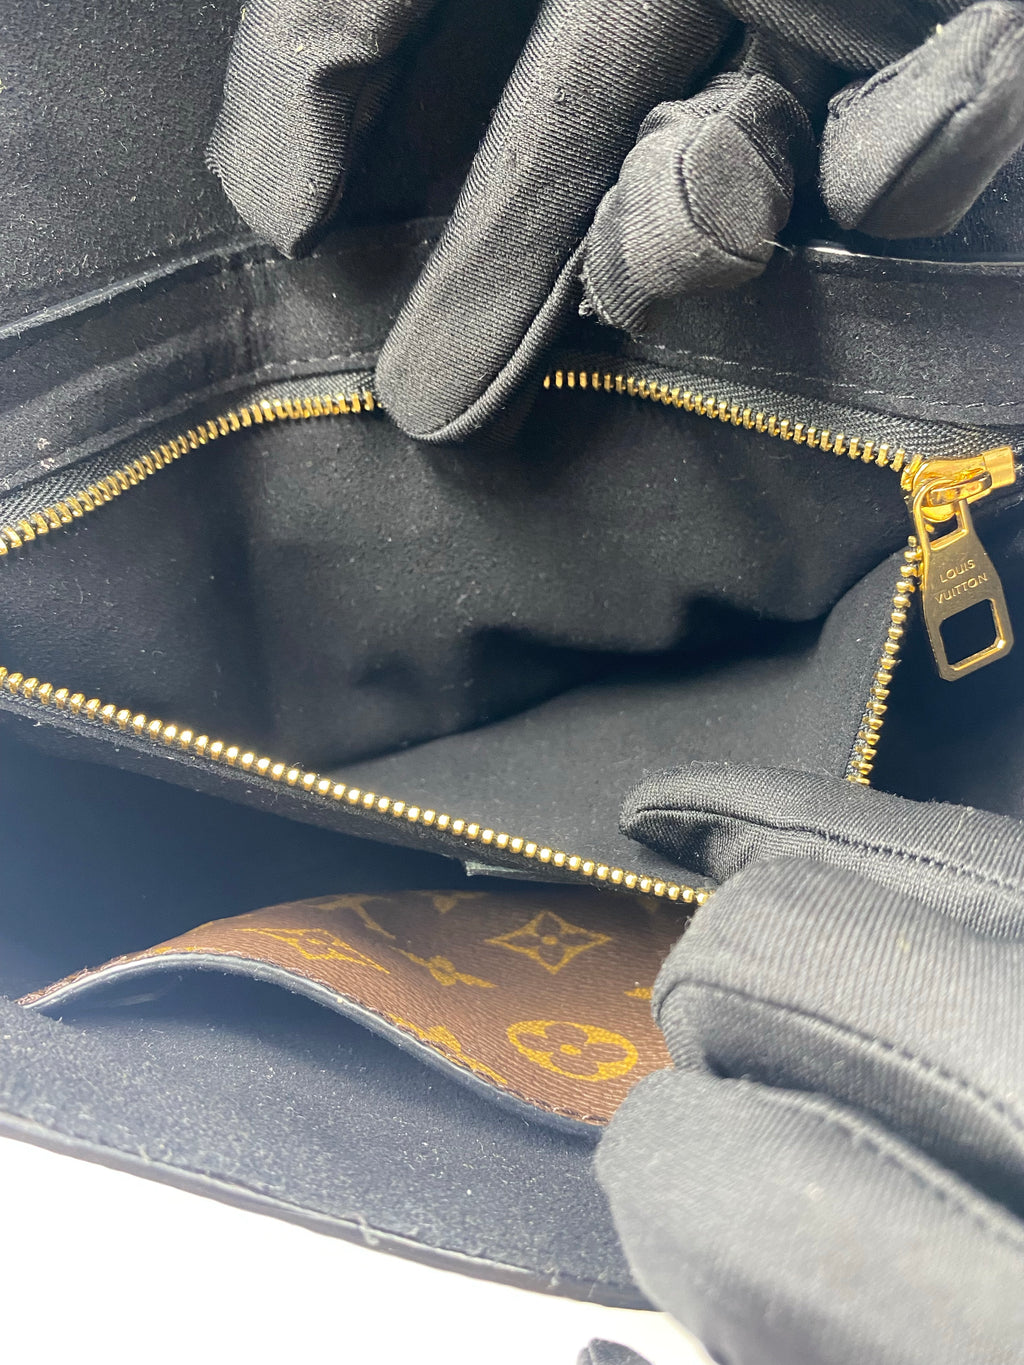 Louis Vuitton, Bags, Louis Vuitton One Handle Flap Bag Mm